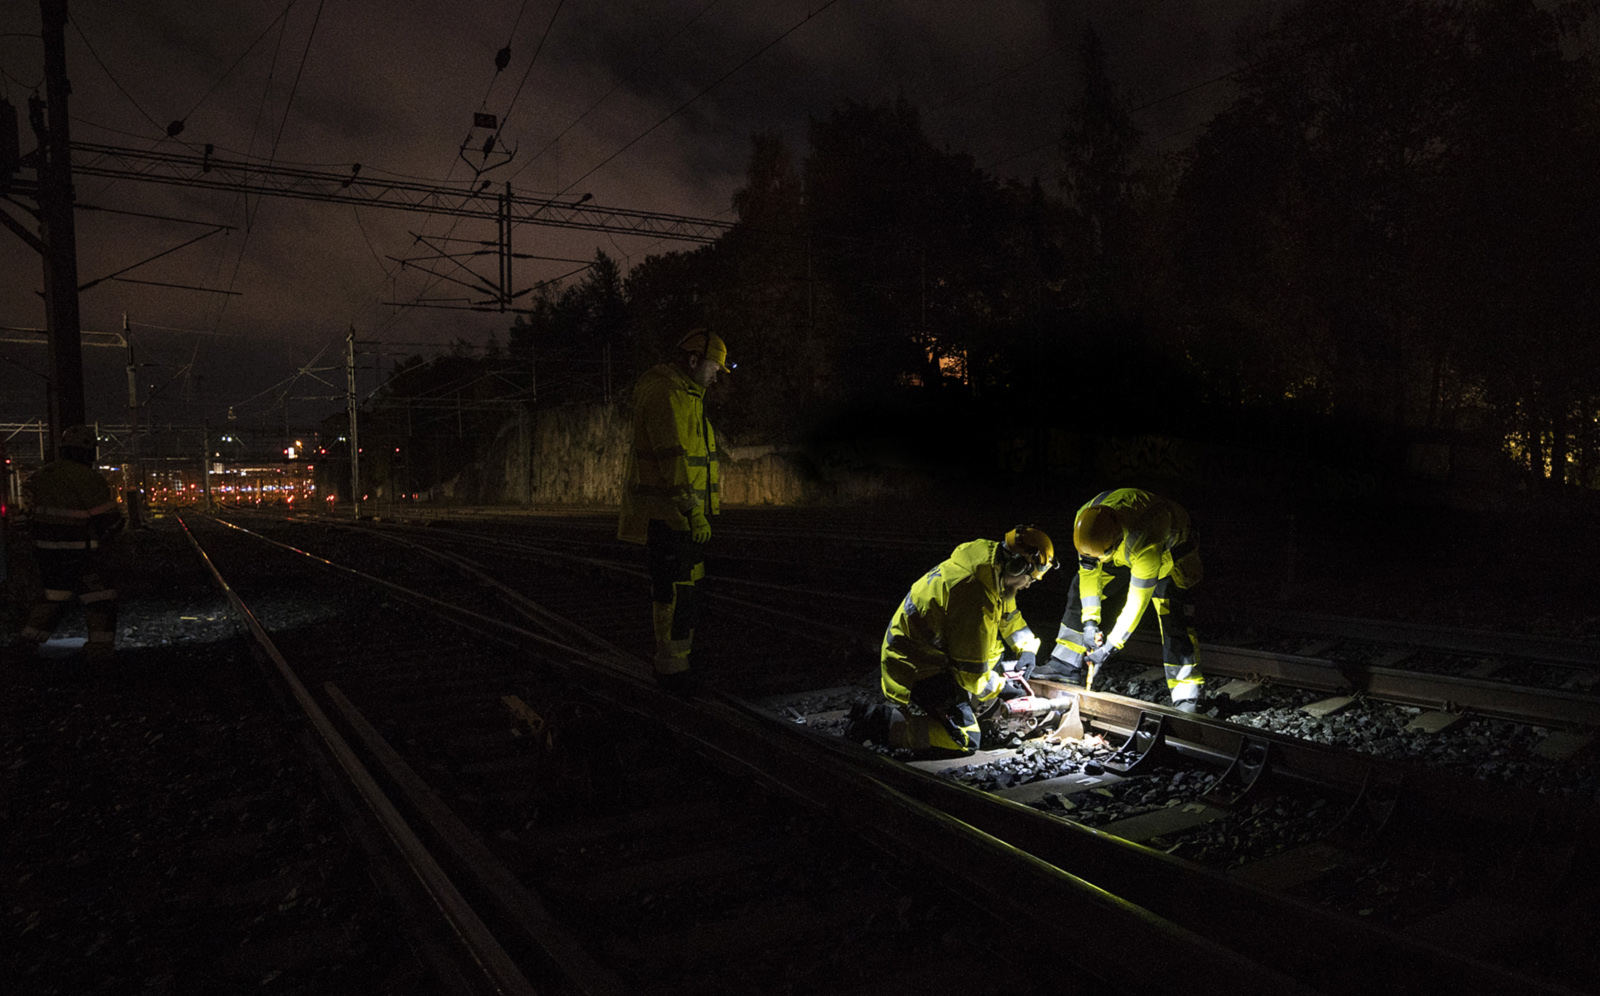 På natten renoverar arbetare en järnvägslinje nära Helsingfors järnvägsstation.